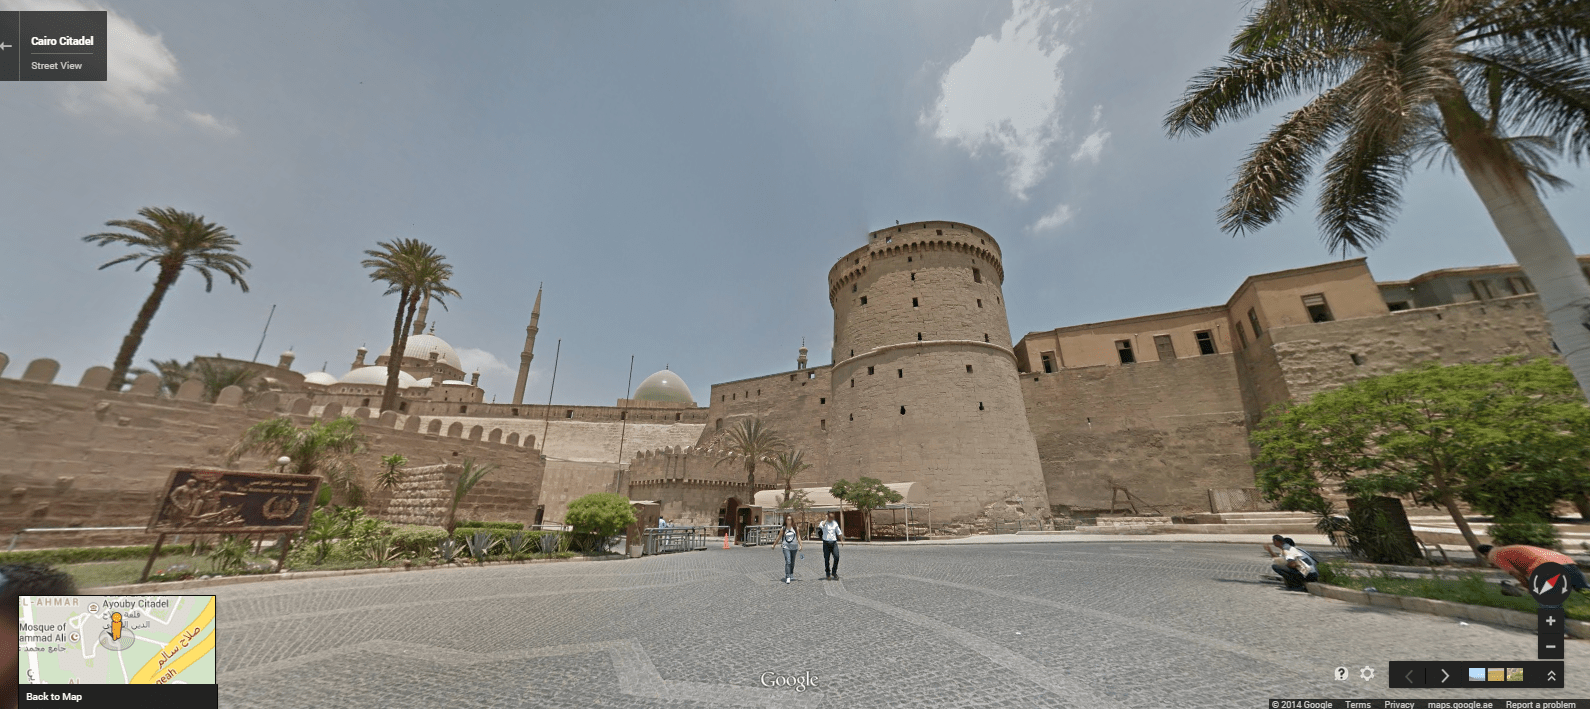 The Cairo Citadel entrance.